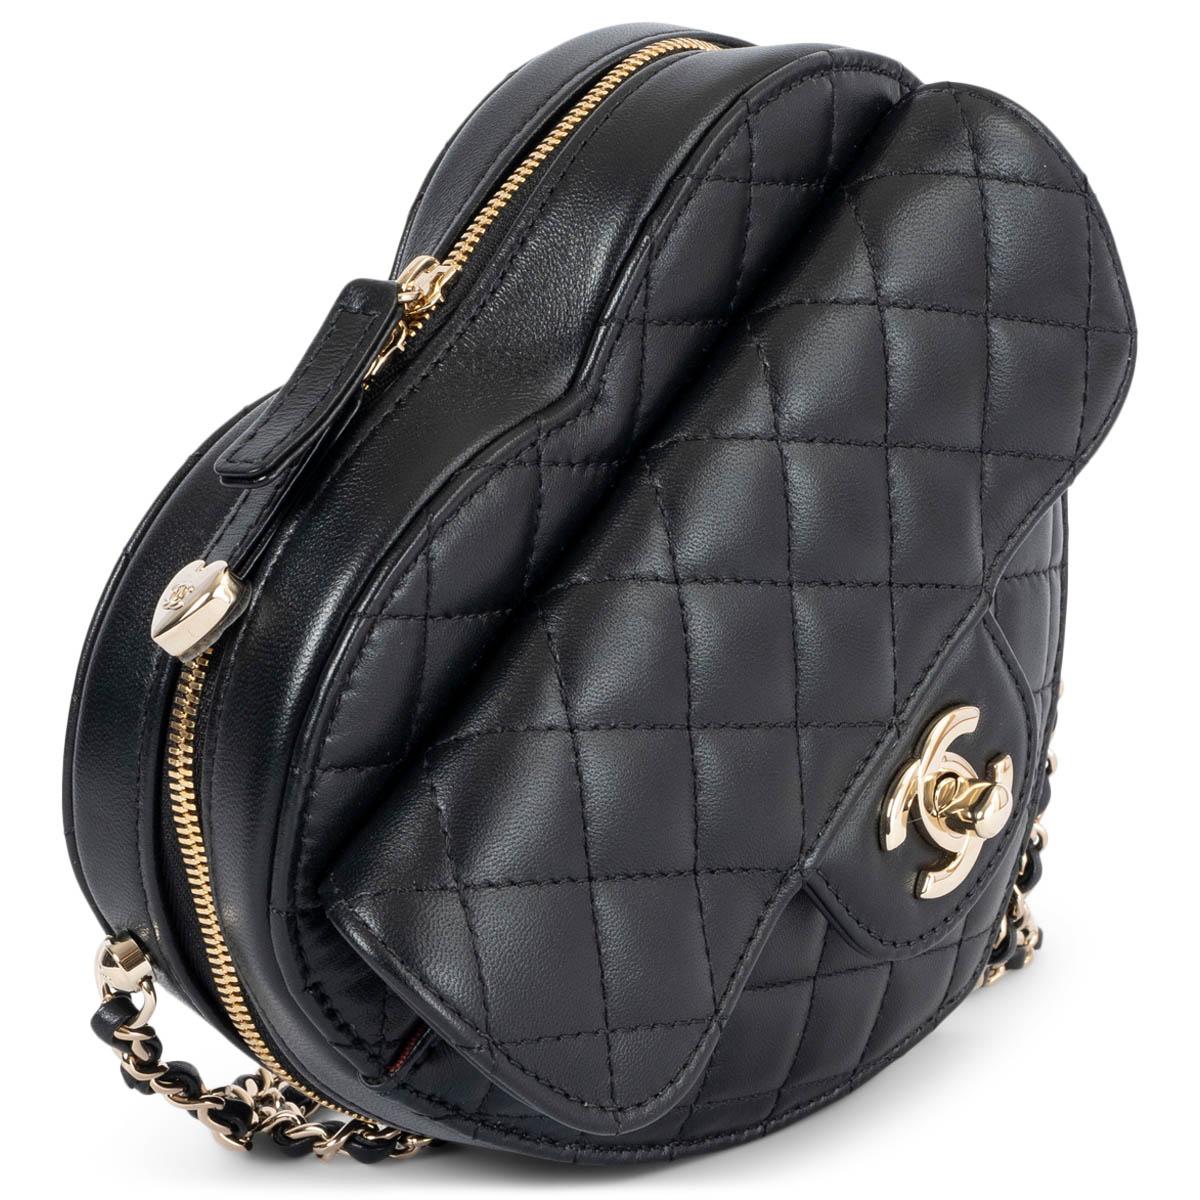 100% authentique Sac Heart de Chanel en cuir matelassé noir avec quincaillerie plaquée or clair. Il est doté d'une poche à rabat sur le devant avec fermeture CC, d'une poche ouverte au dos et d'une sangle en chaîne classique. Fermeture à glissière